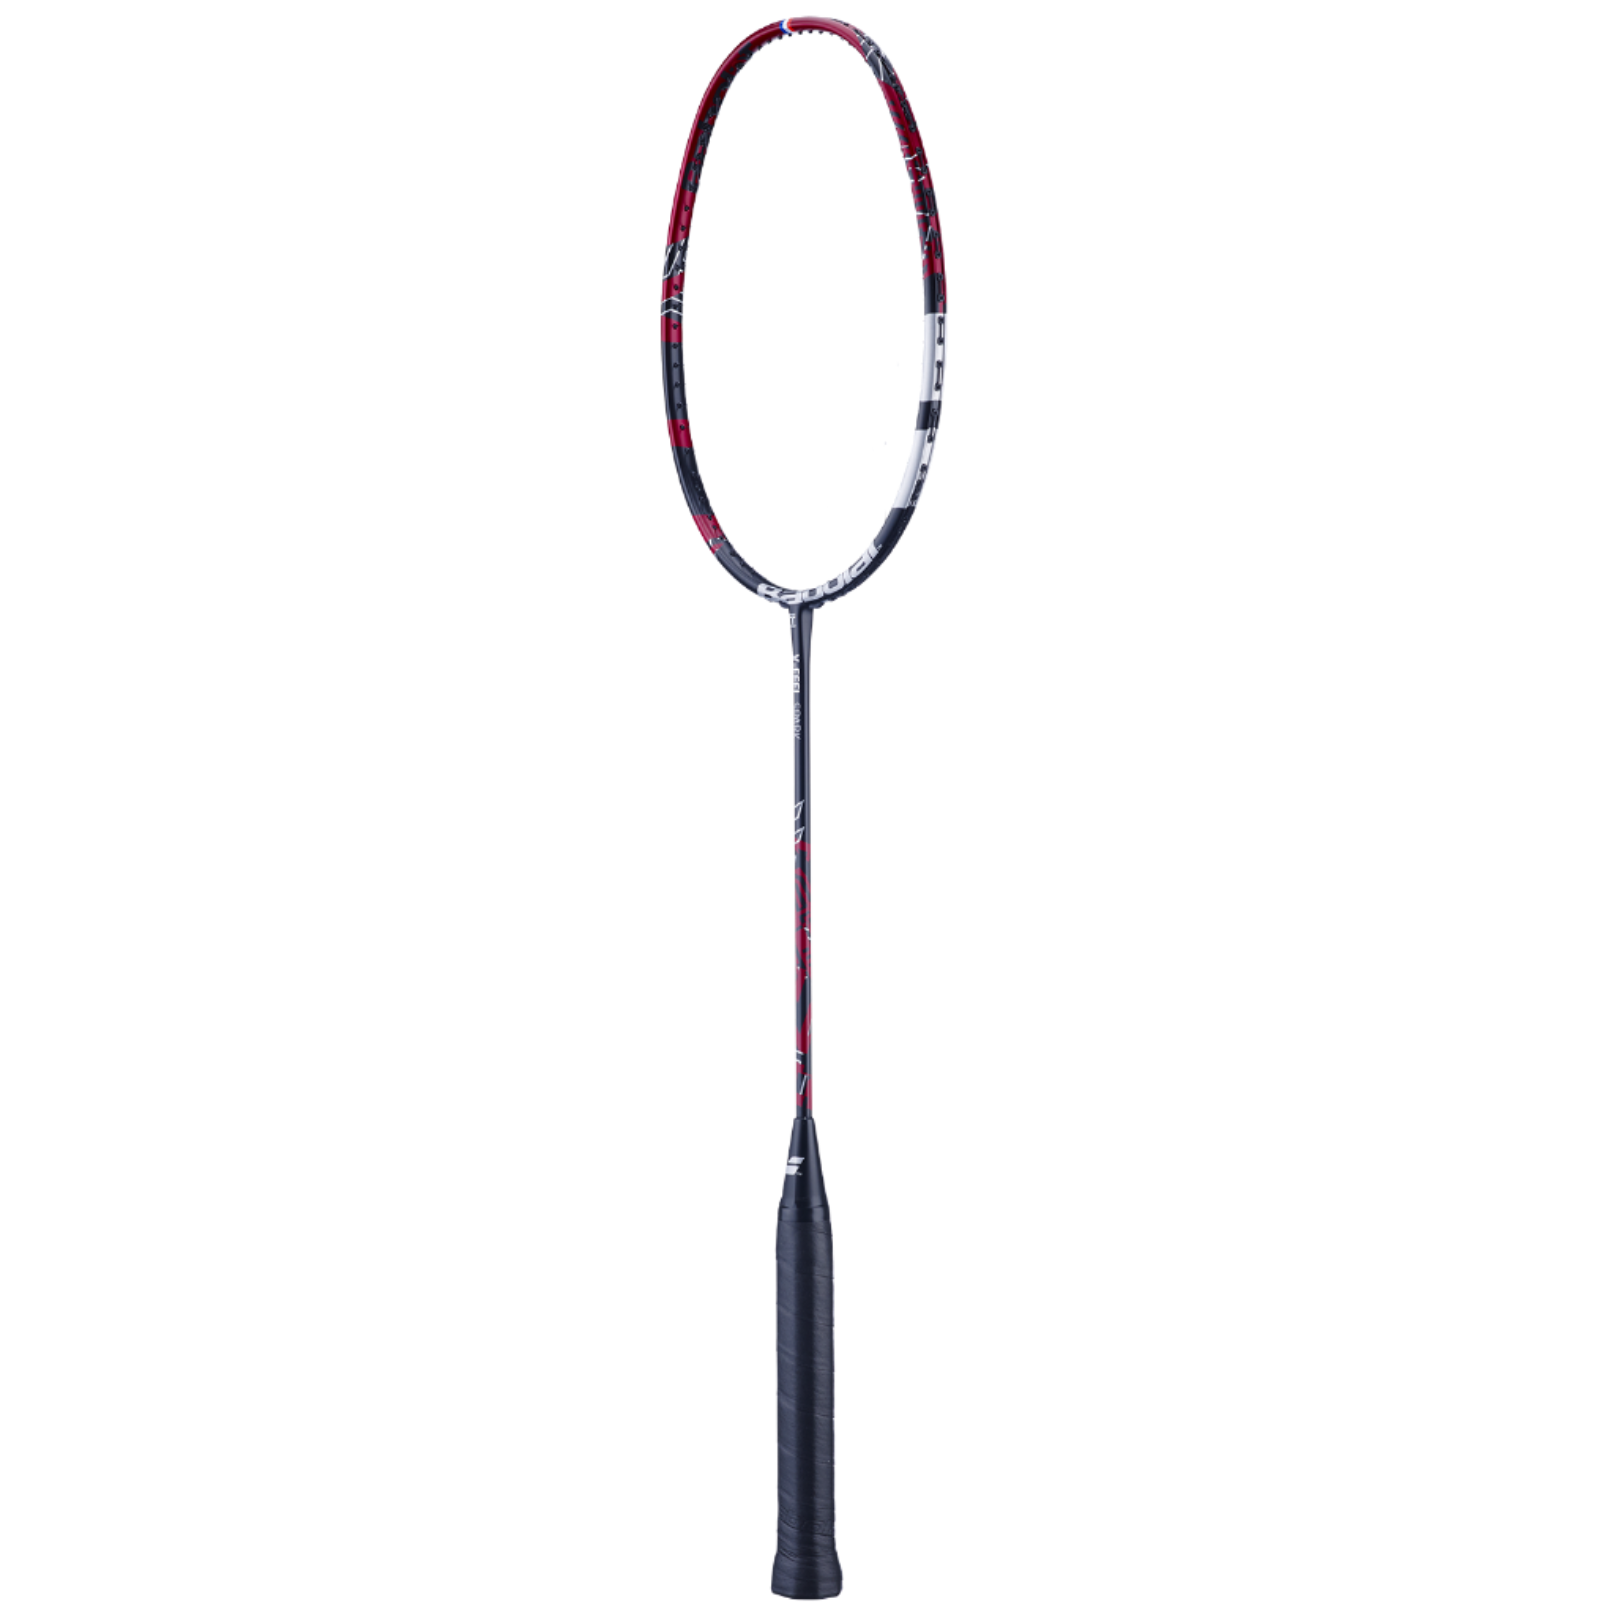 Babolat X-Feel Spark Badminton Racket 601436 (Strung)